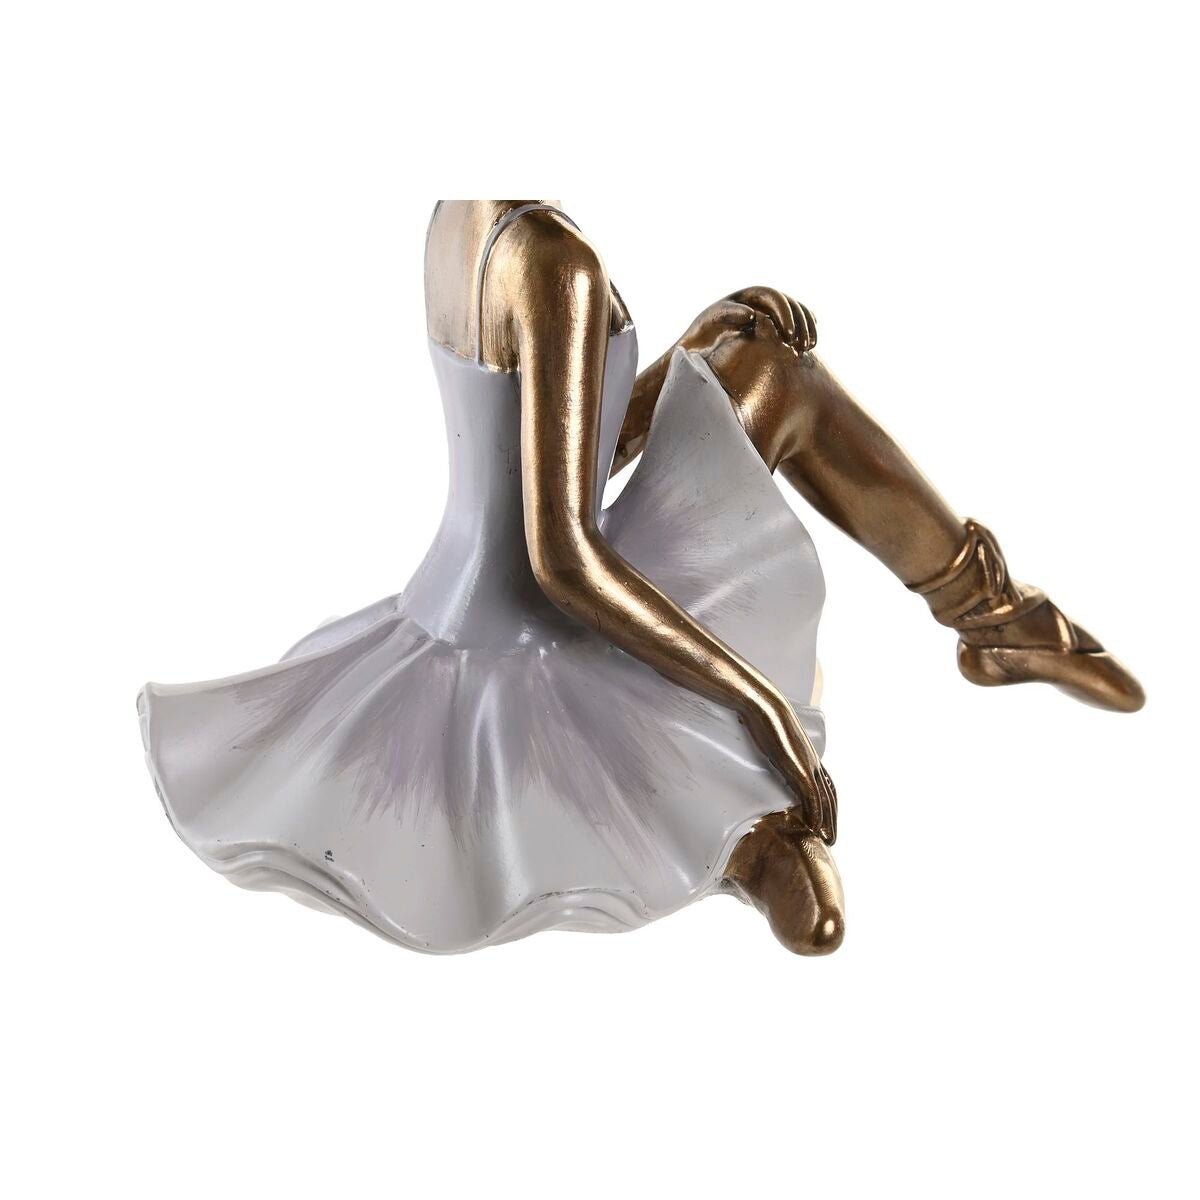 To Guld Ballerina 19 x 13,5 x 17,5 cm